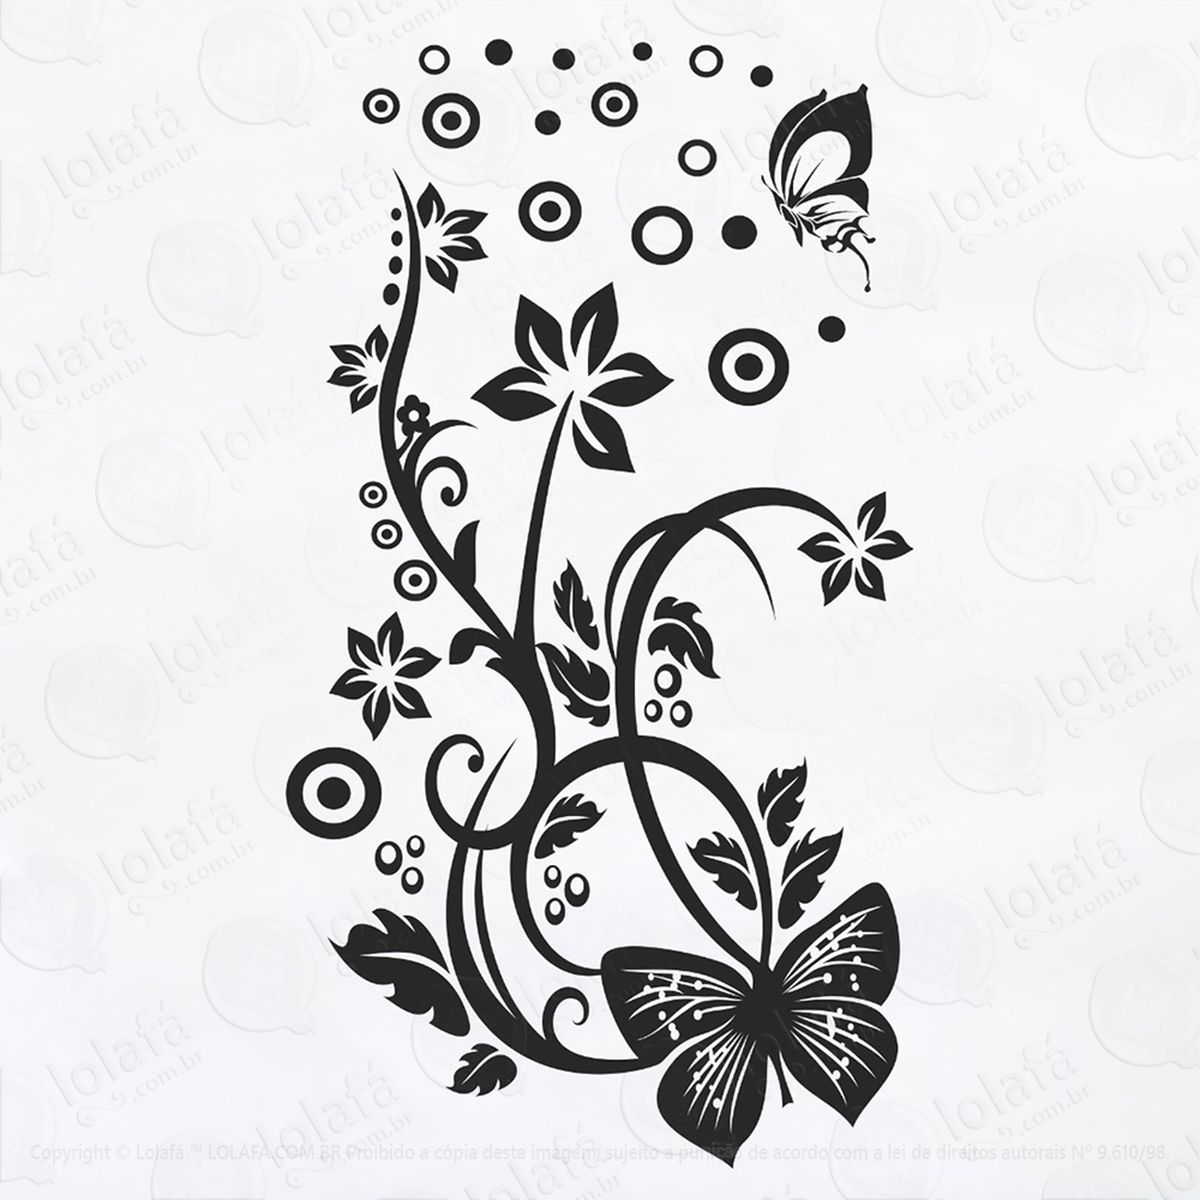 adesivo decorativo parede box geladeira borboleta flor bolha mod:6